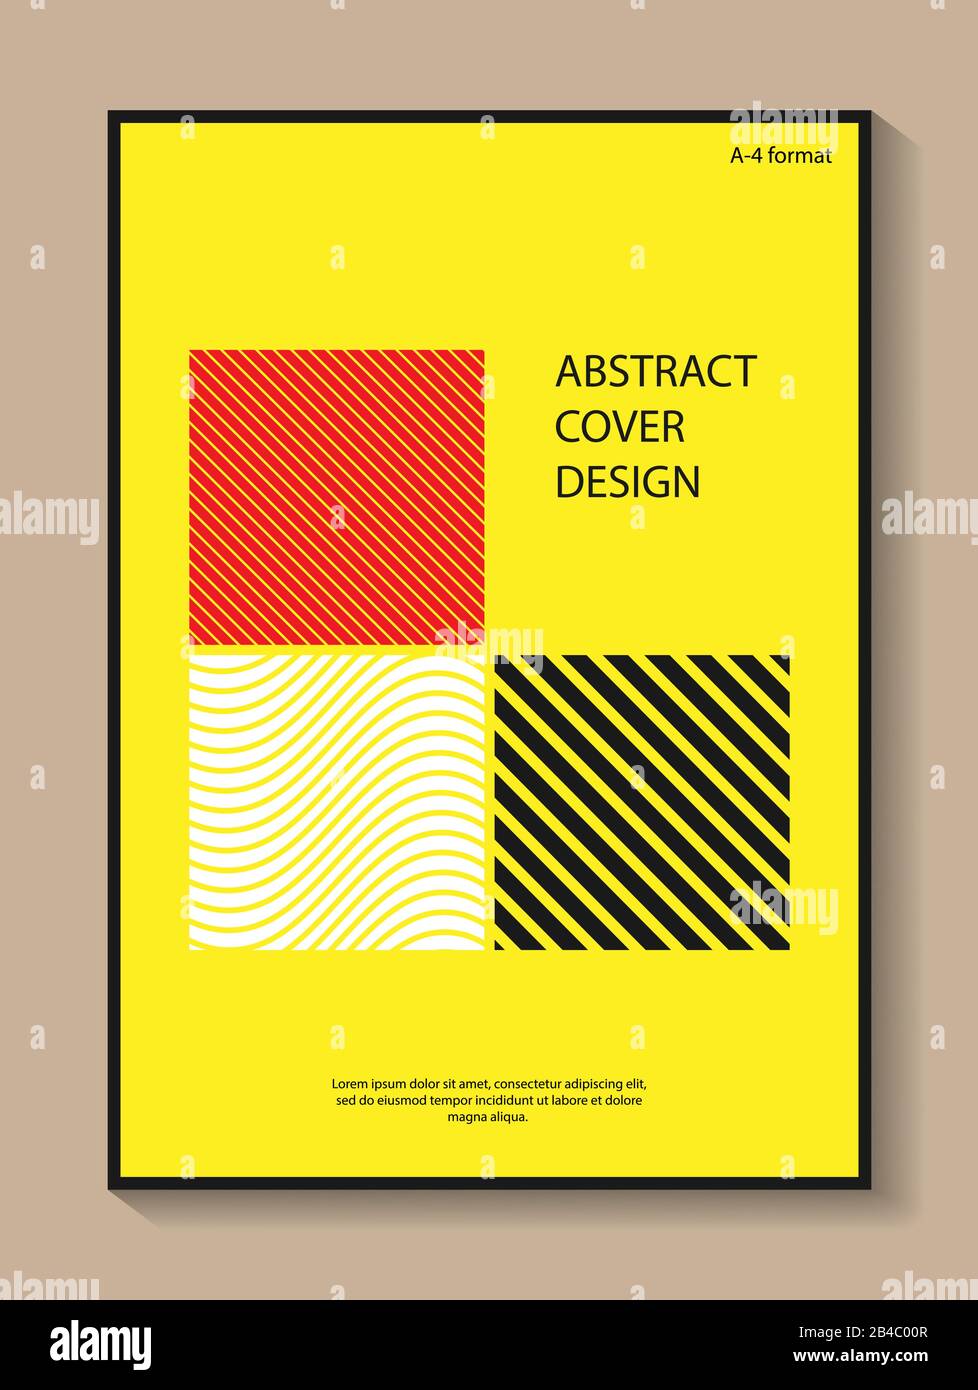 Modificabile colore sfondo astratto nello stile del minimalismo per la progettazione di copertine di libri, brochure e opuscoli. A-4 formato. Moderni colori casuali. Illustrazione Vettoriale